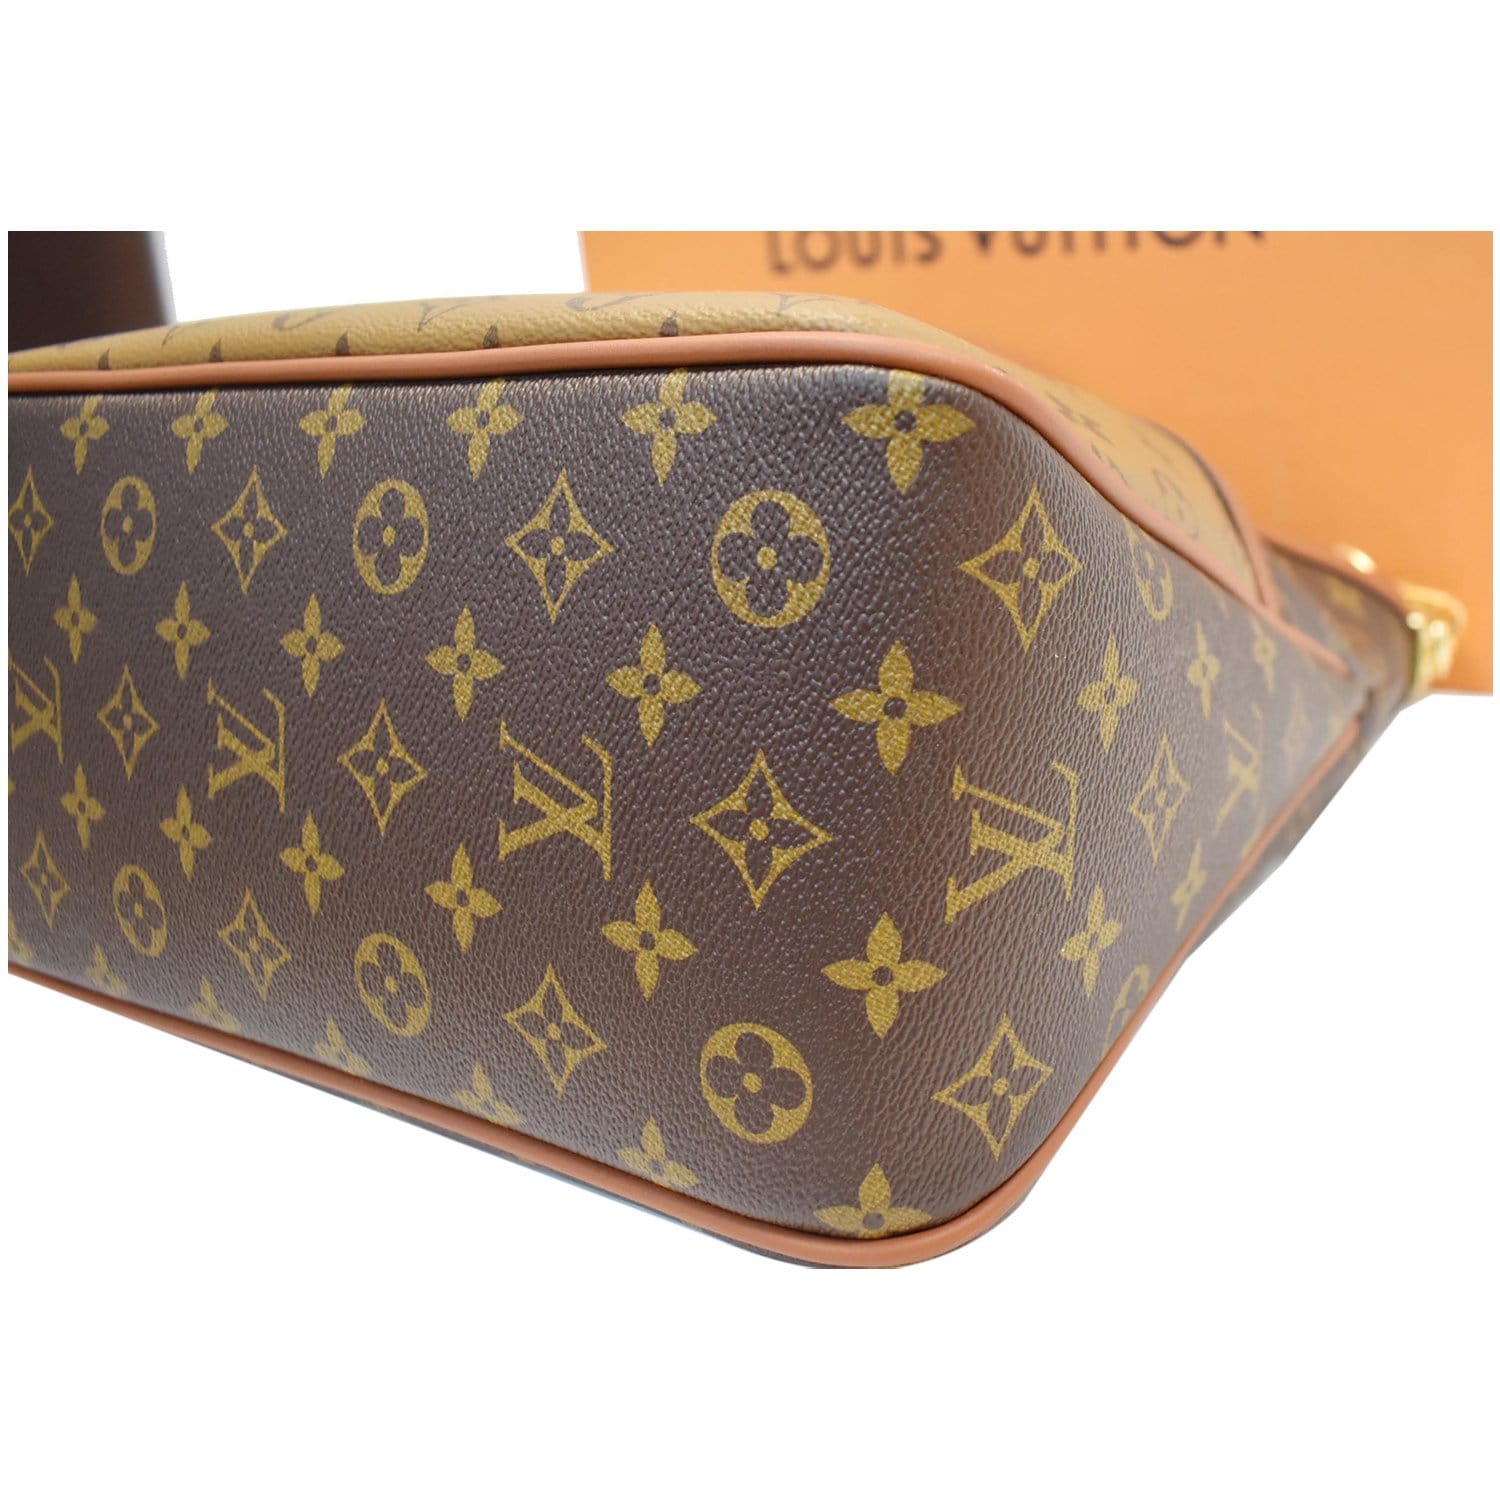 Louis Vuitton Dauphine Hobo Classic Reverse Monogram Size 24×27×11 cm Strap  drop 53 cm Adjustable shoulder strap 2020 IDR 25.000.000